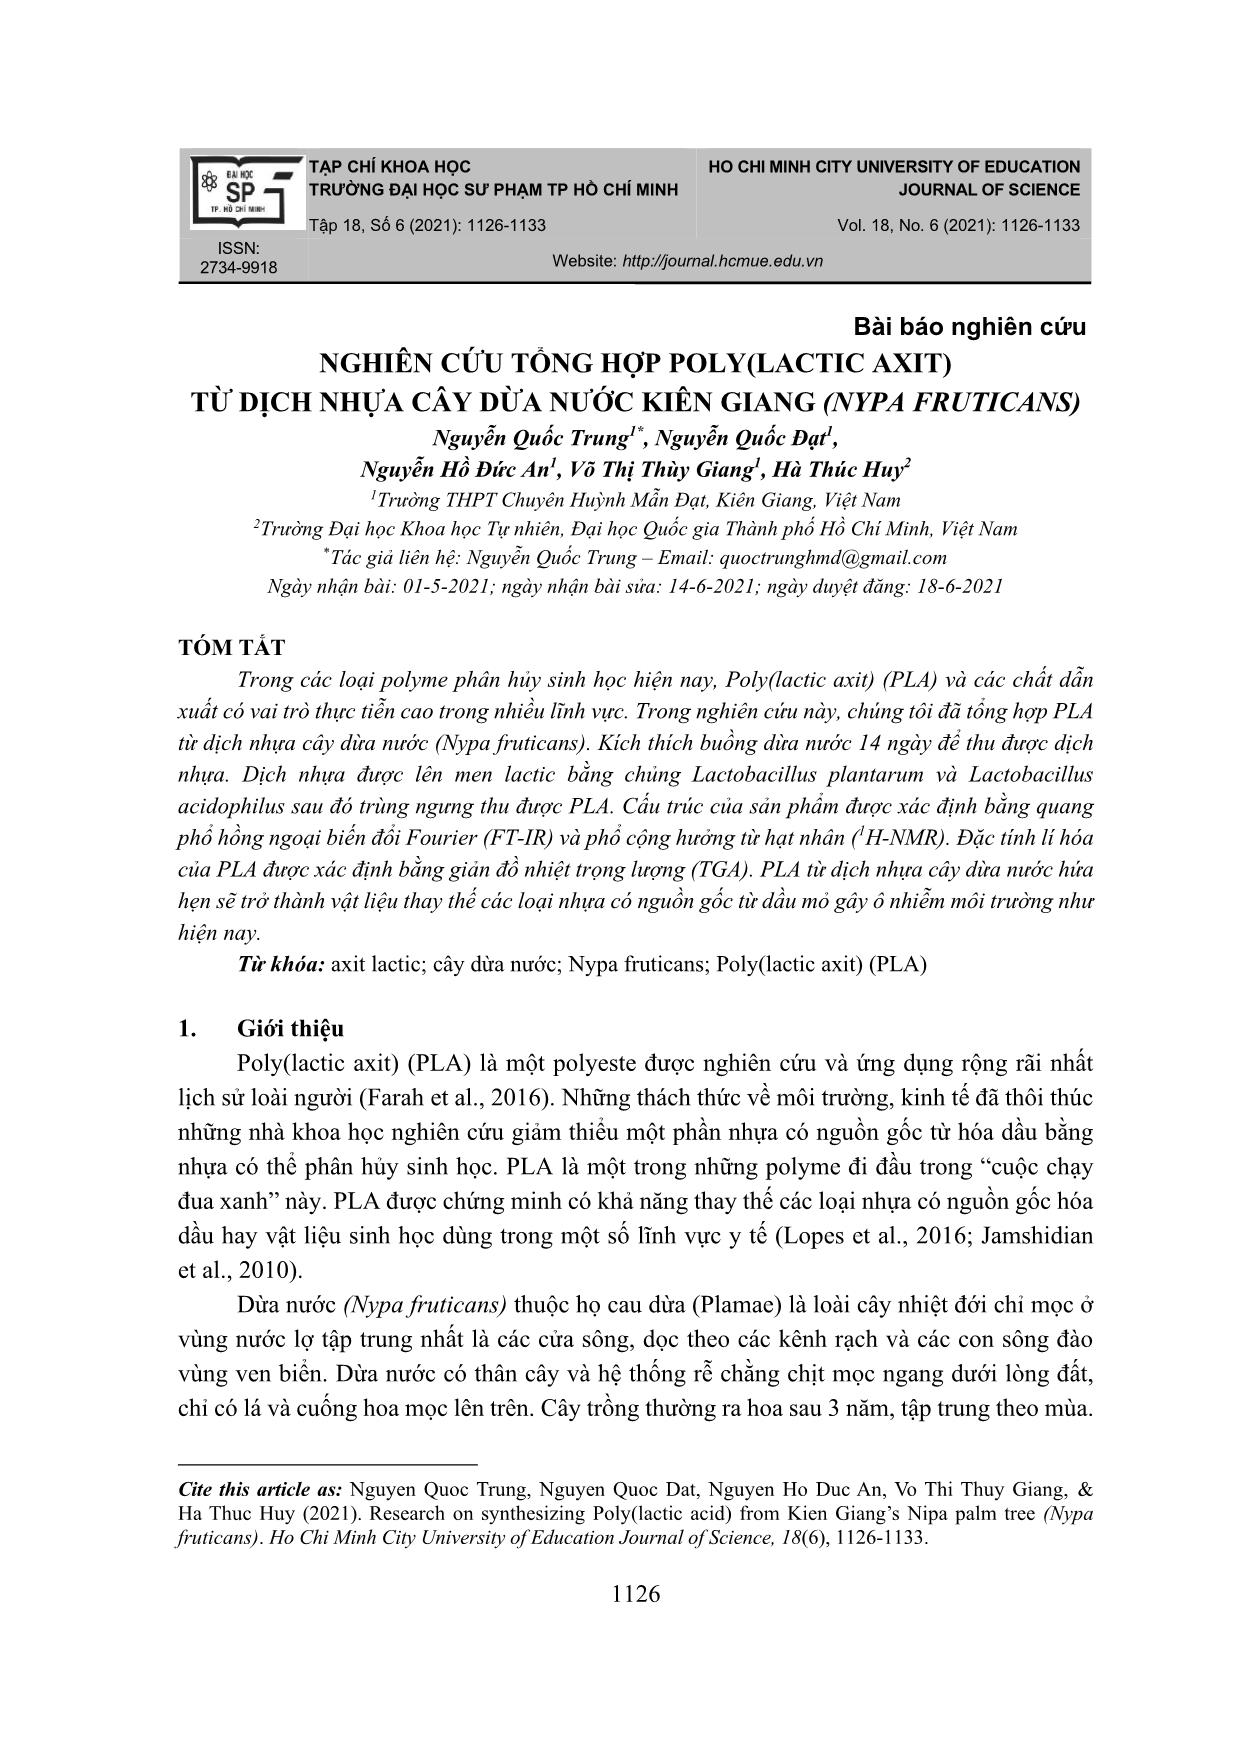 Nghiên cứu tổng hợp poly(lactic axit) từ dịch nhựa cây dừa nước Kiên Giang (nypa fruticans) trang 1